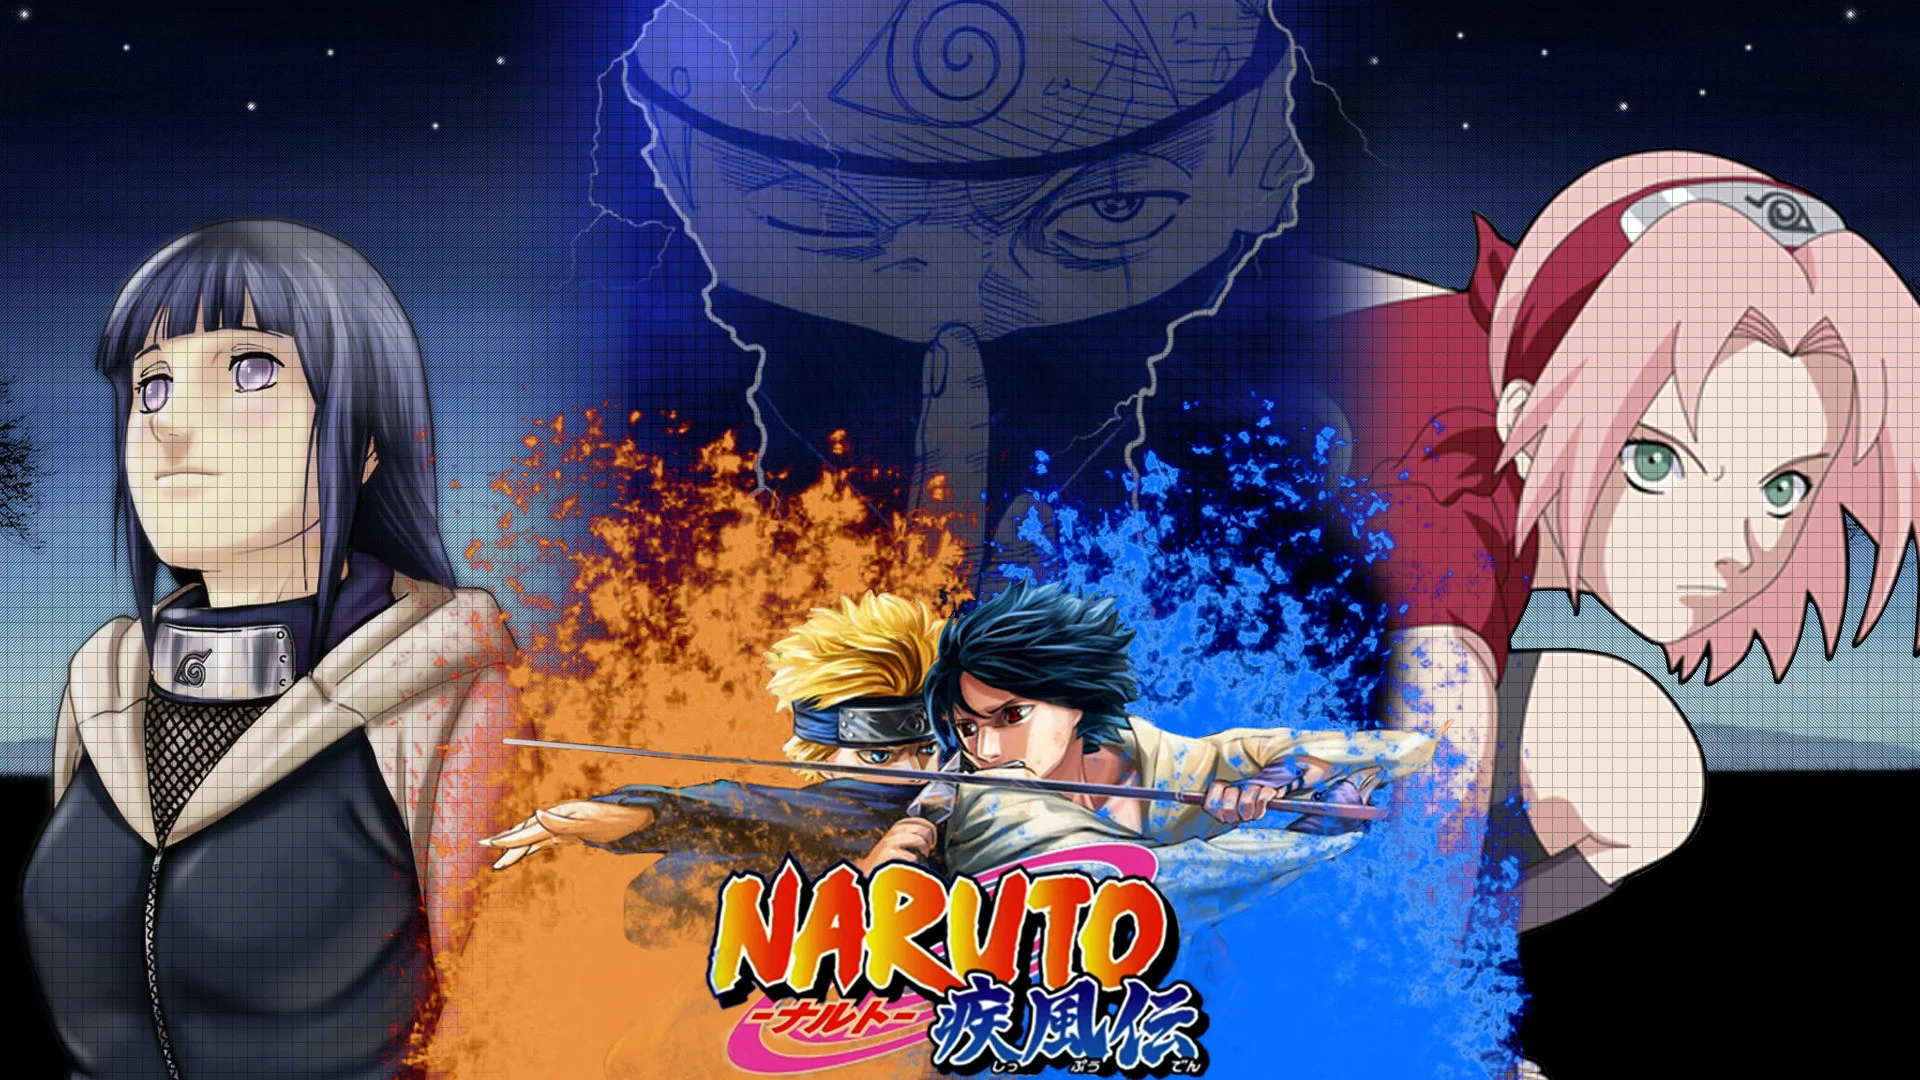 Xem Naruto vs Sasuke (Naruto Shippuden) tranh nền #4631 để thấy một trận đấu đỉnh cao giữa hai nhân vật chính. Để biết ai sẽ thắng trong cuộc chiến này, hãy nhanh tay nhấn vào hình ảnh để xem ngay!